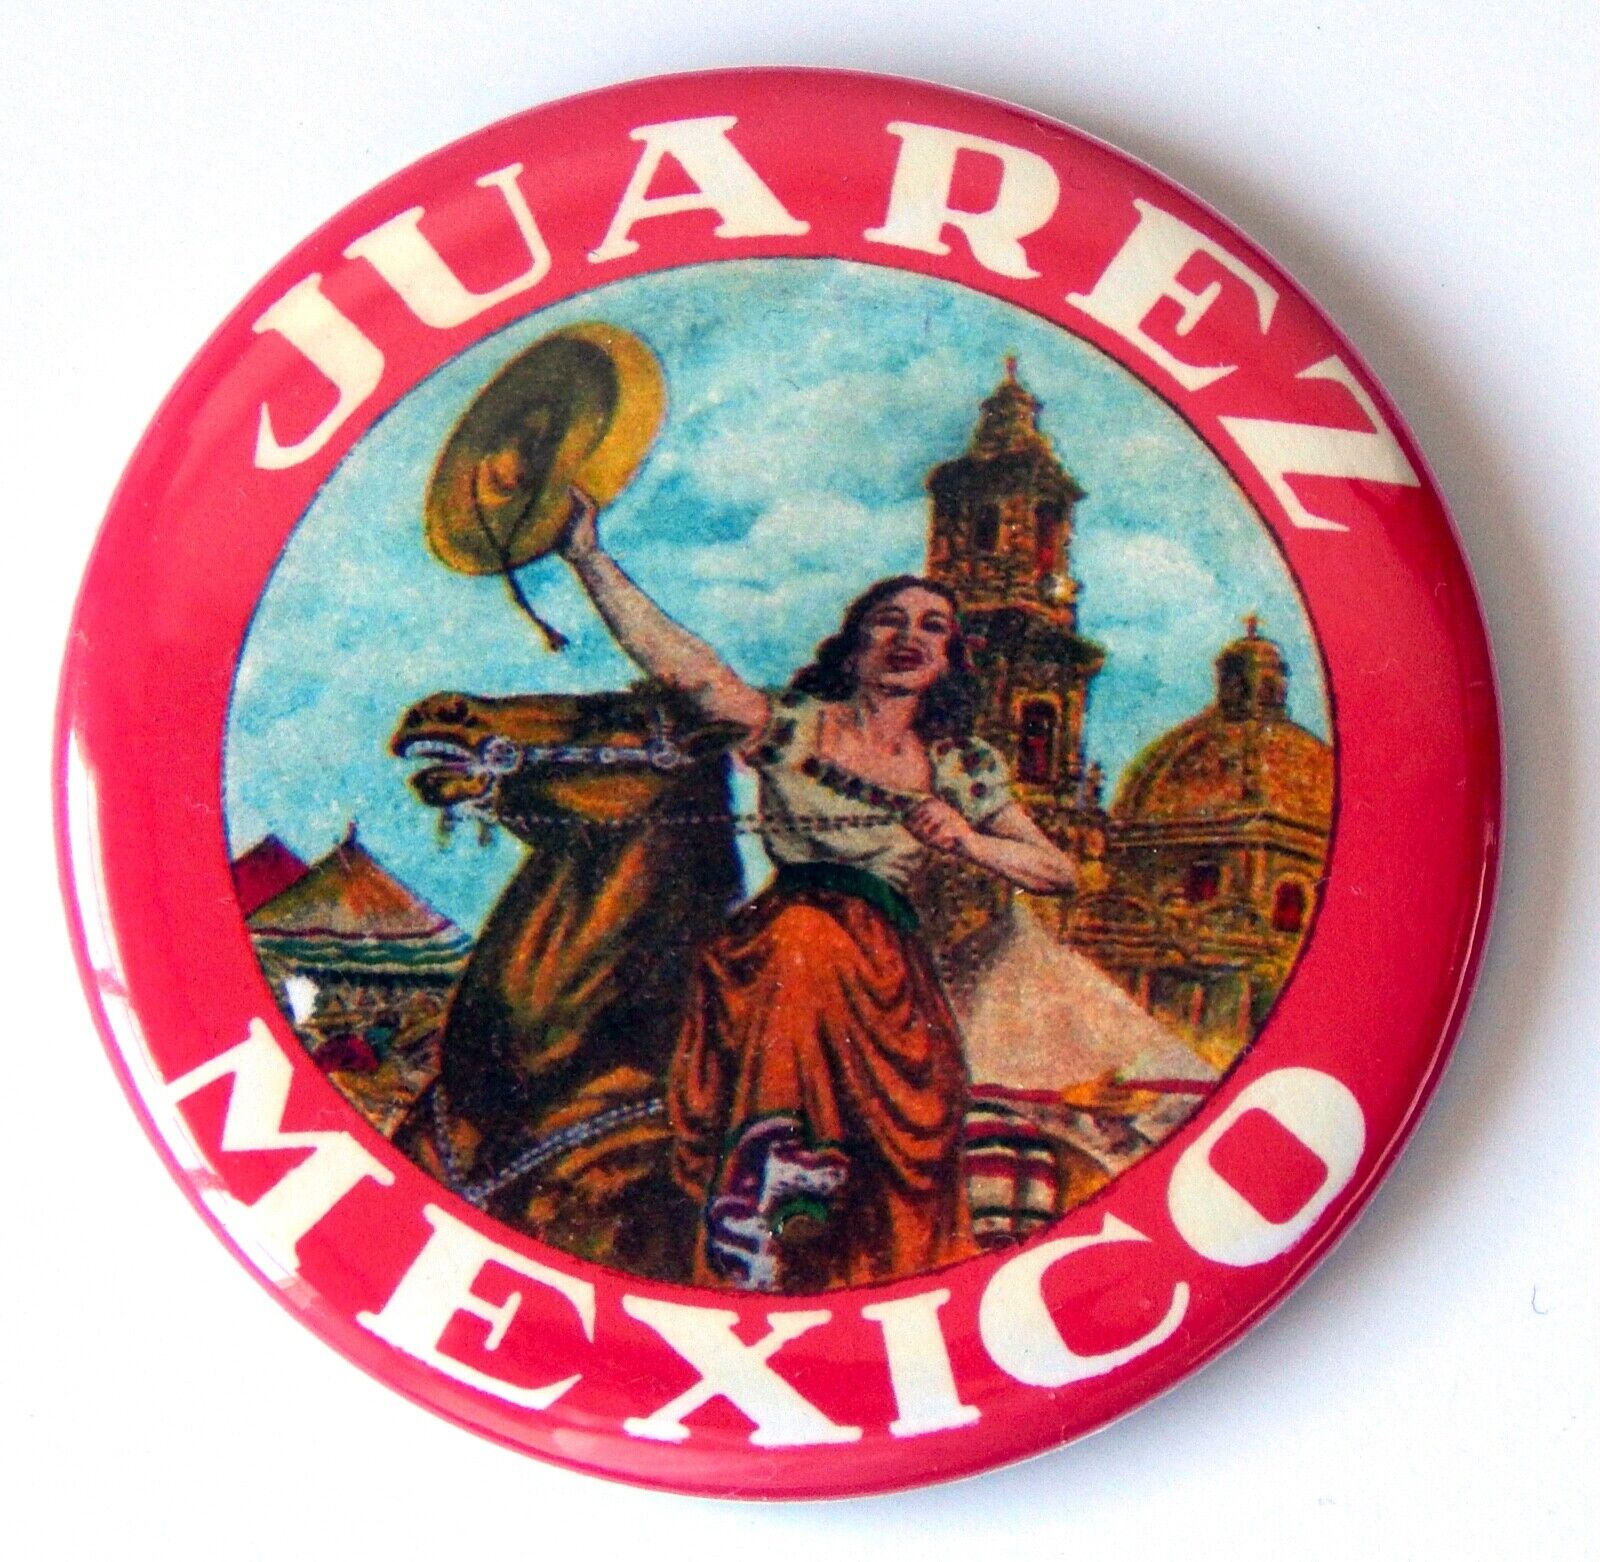 Juarez Mexico FRIDGE MAGNET (2.25 inches) travel souvenir